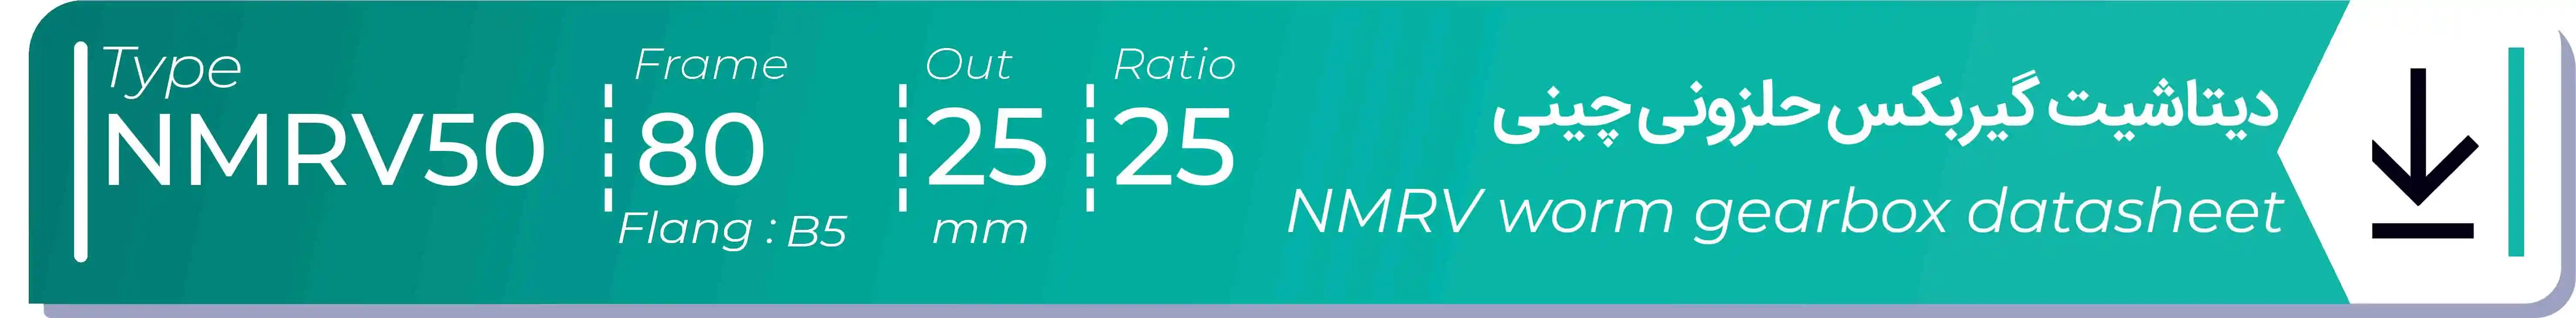  دیتاشیت و مشخصات فنی گیربکس حلزونی چینی   NMRV50  -  با خروجی 25- میلی متر و نسبت25 و فریم 80